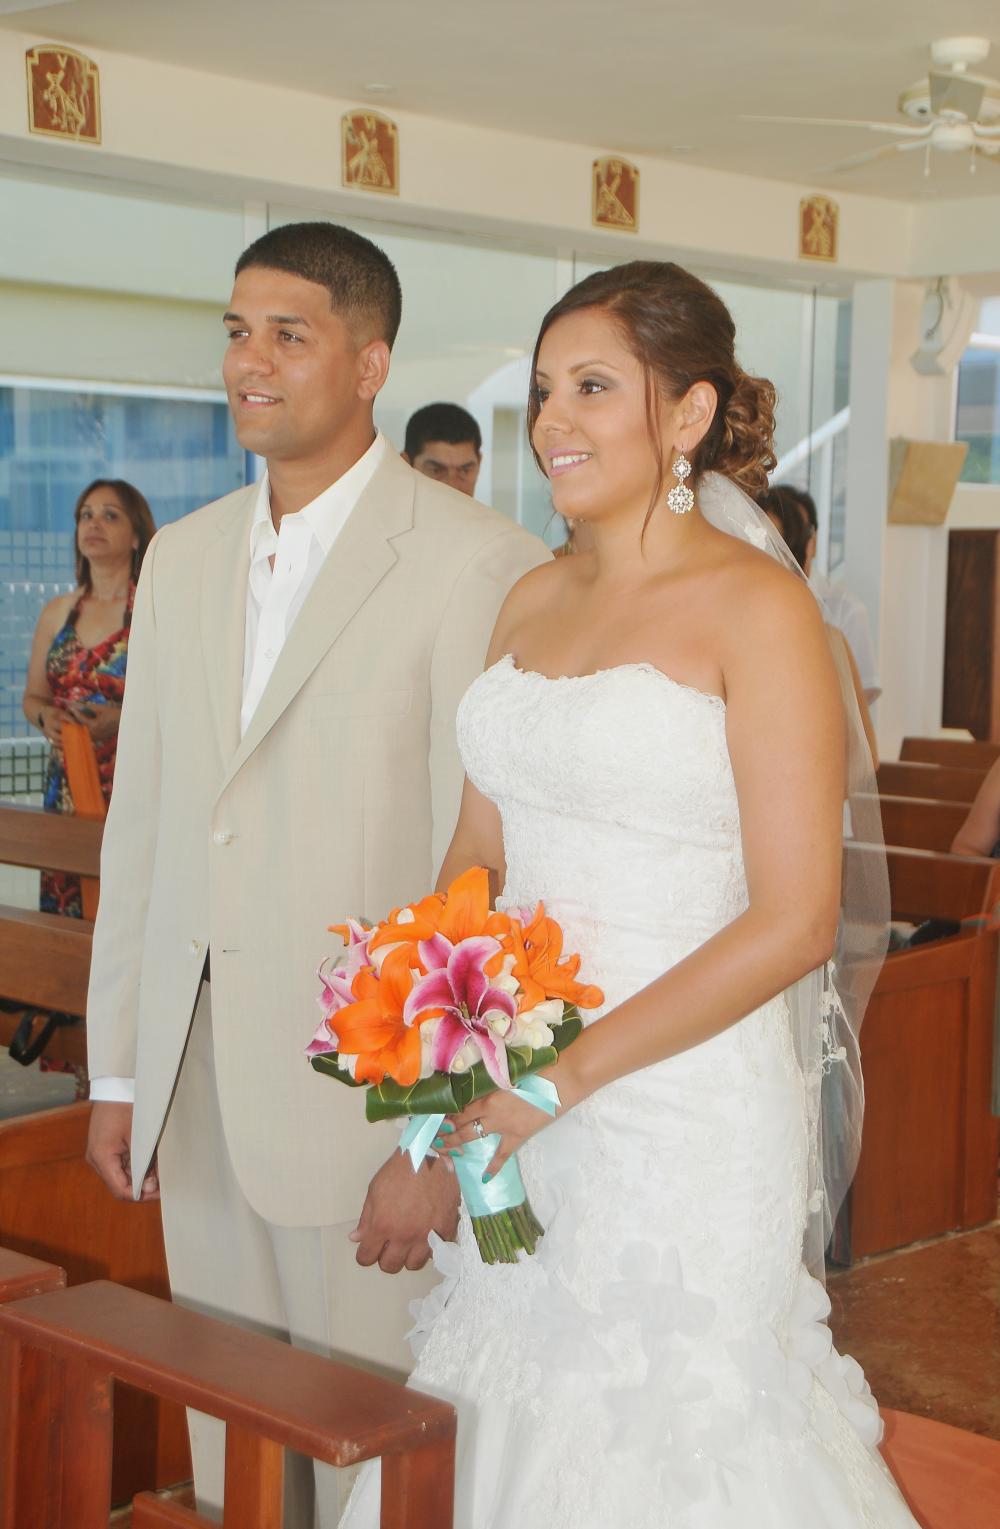 Gran Caribe Real Brides 2012